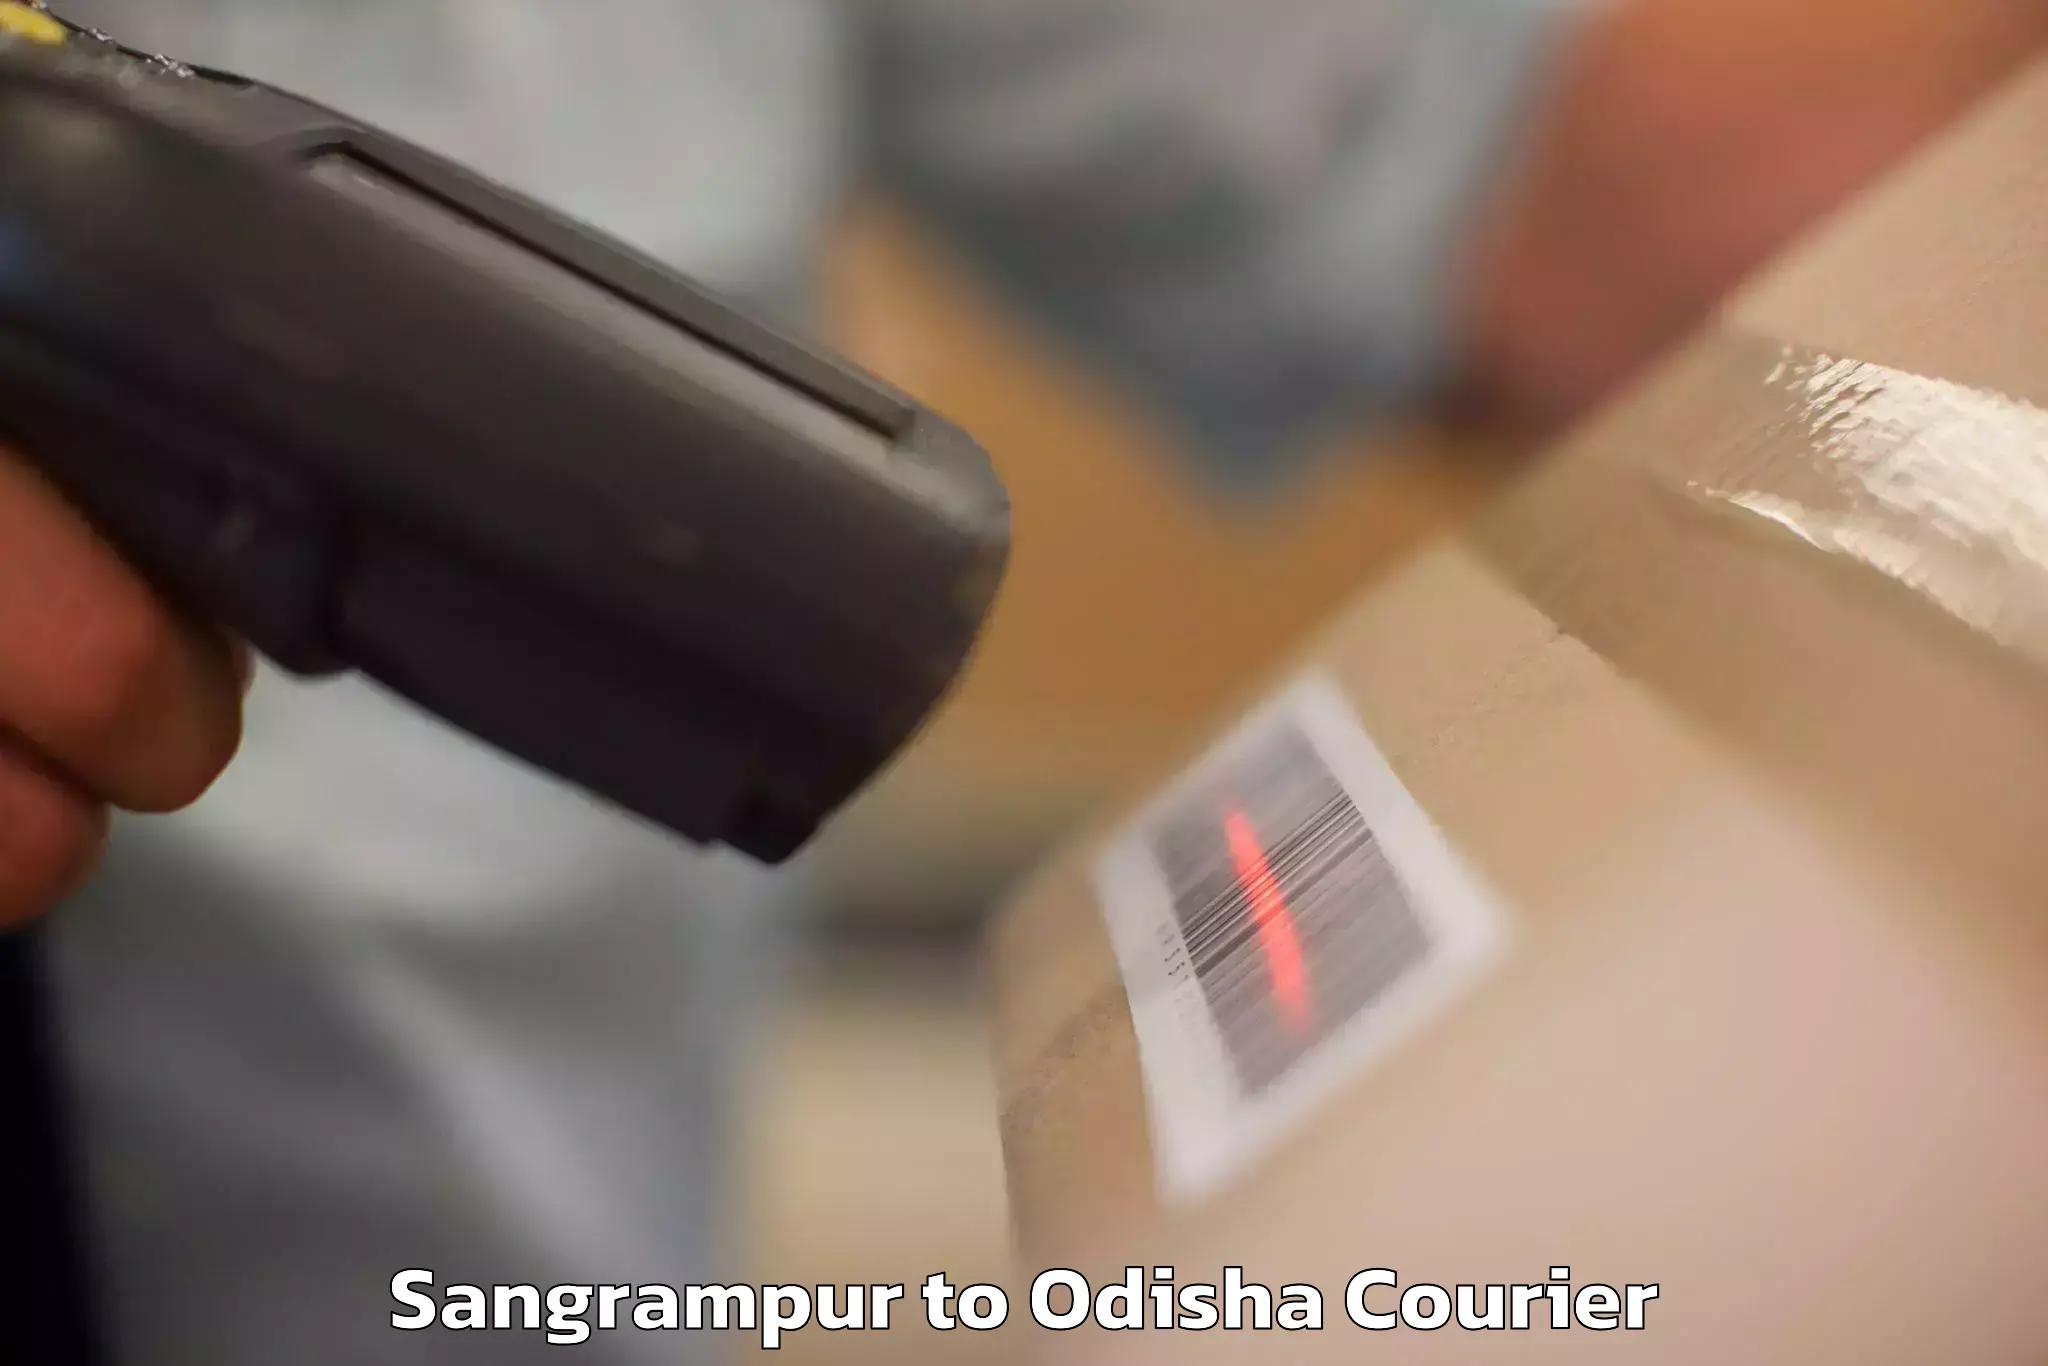 Luggage shipment tracking Sangrampur to Baliapal